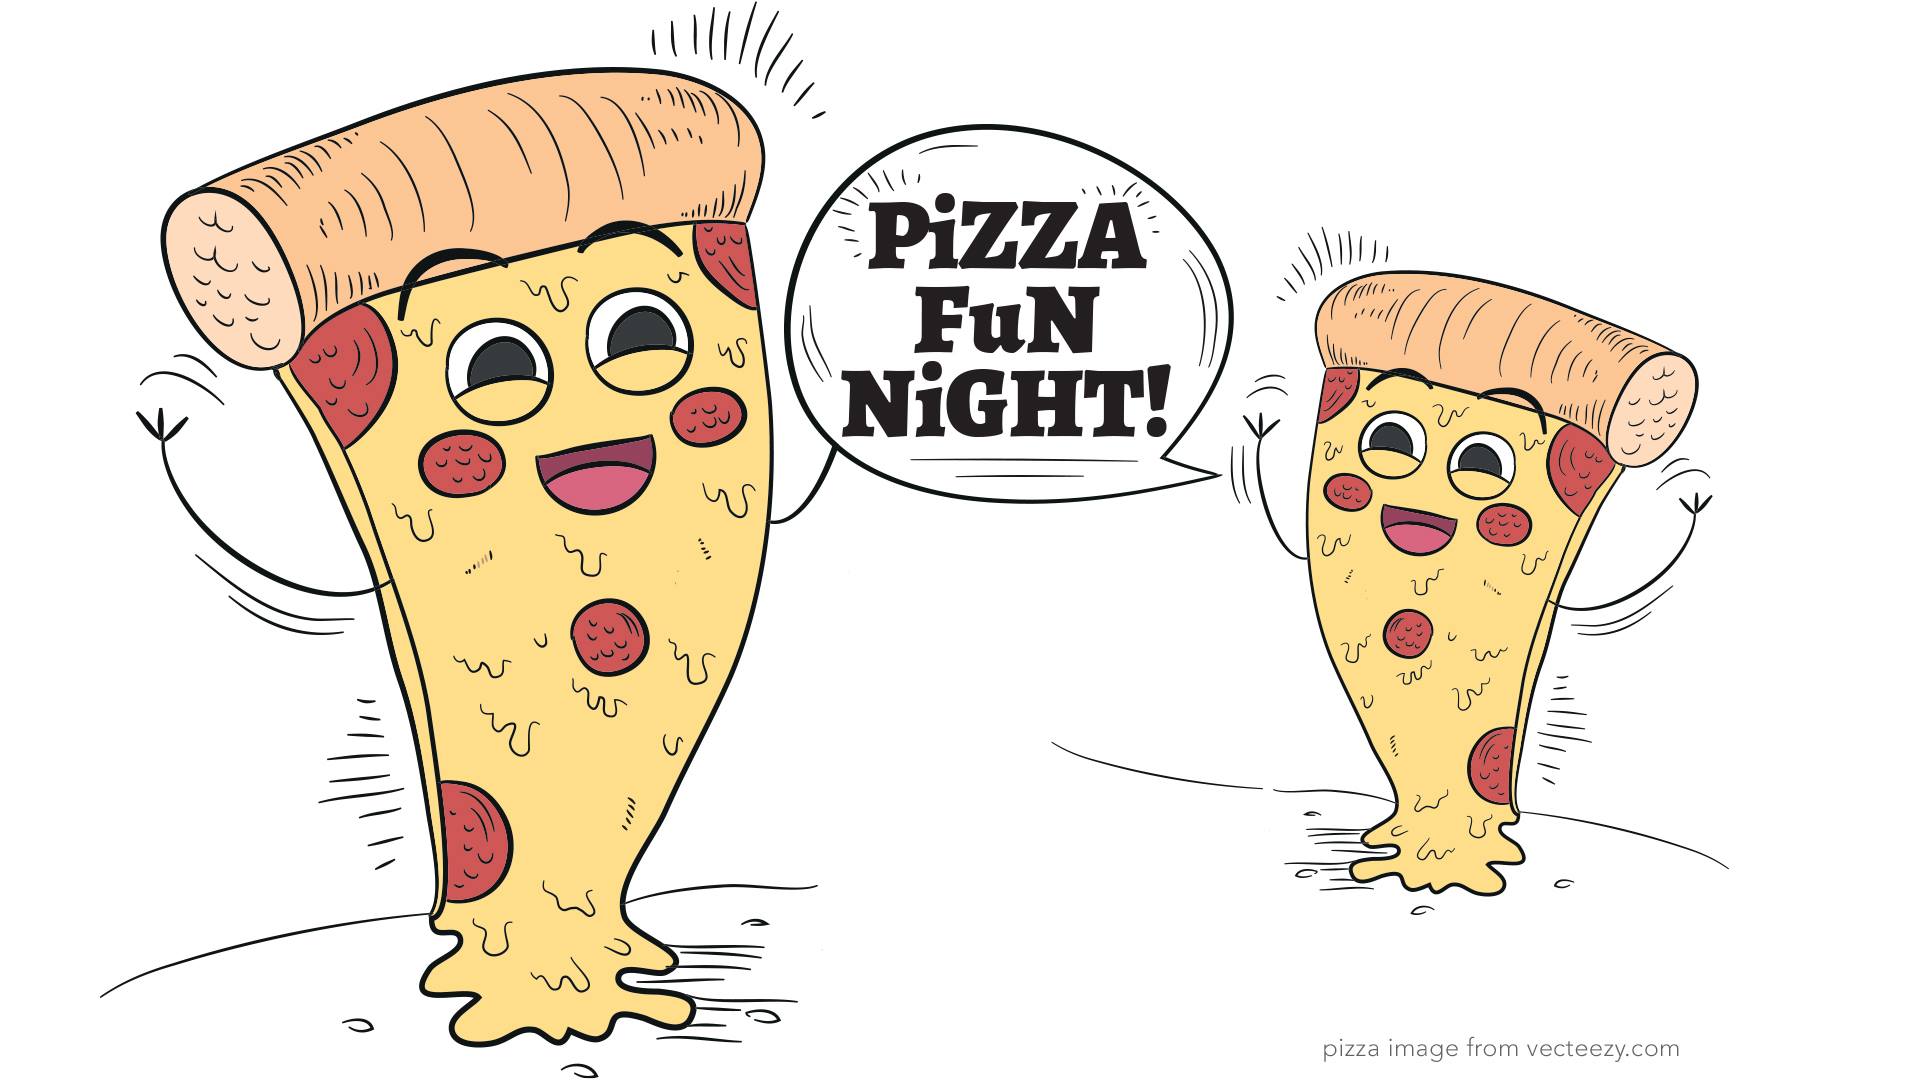 Pizza Fun Night